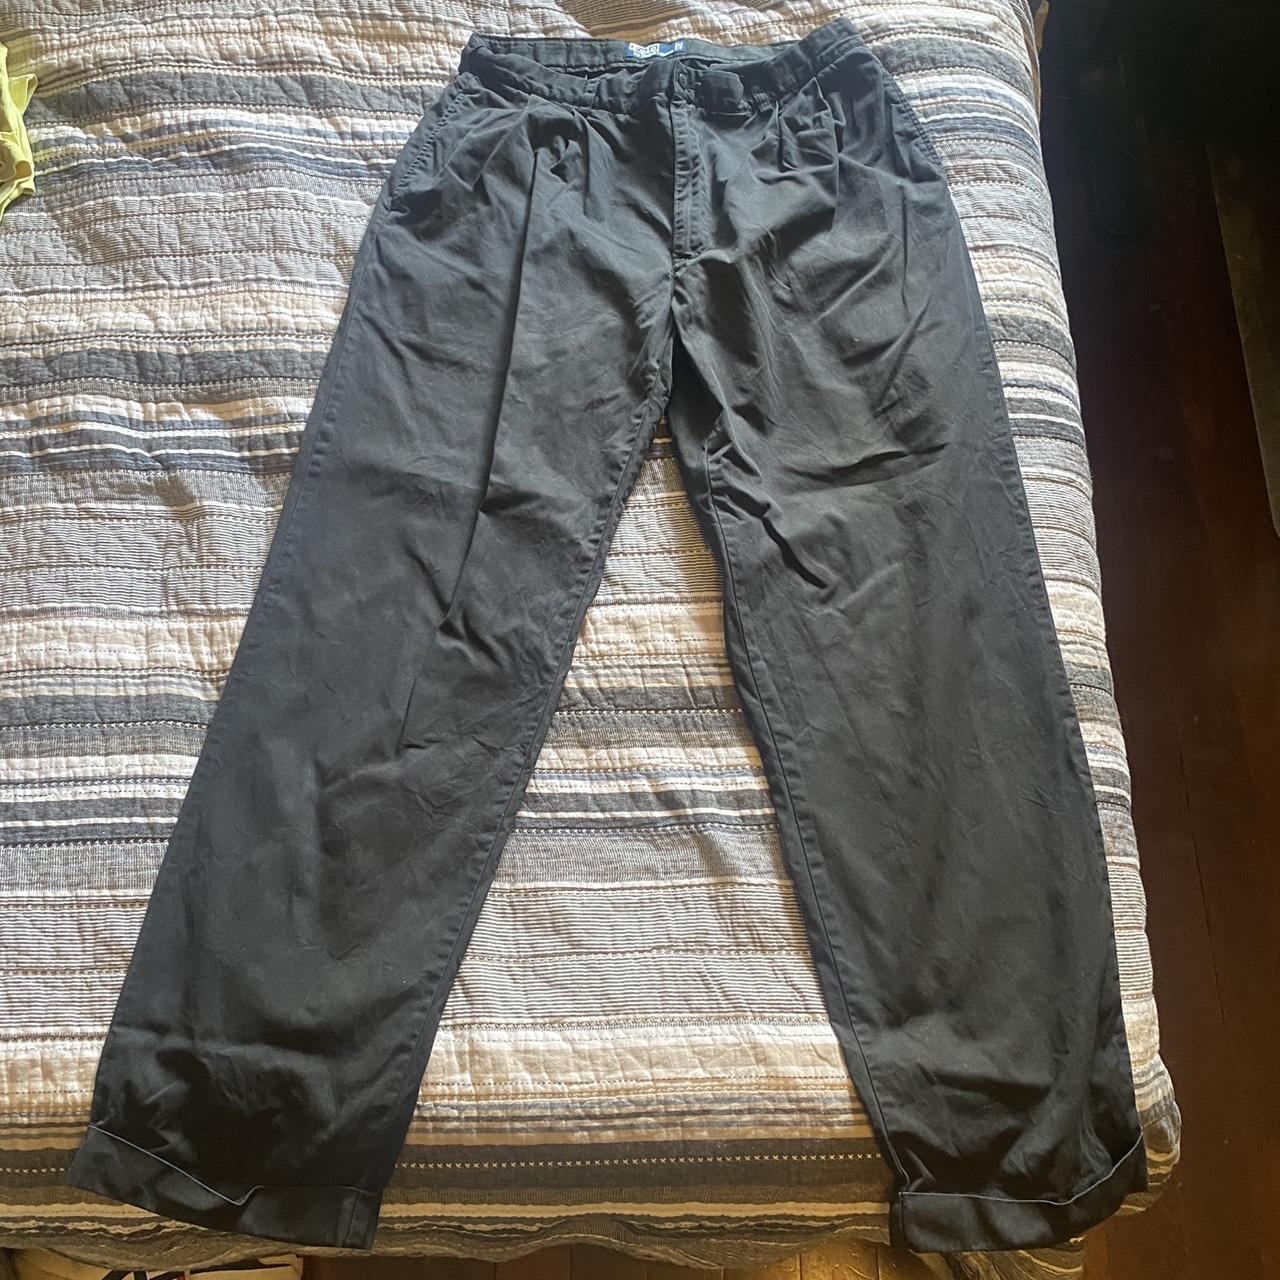 Polo Ralph Lauren Navy Pants 32 waist - fits baggy... - Depop